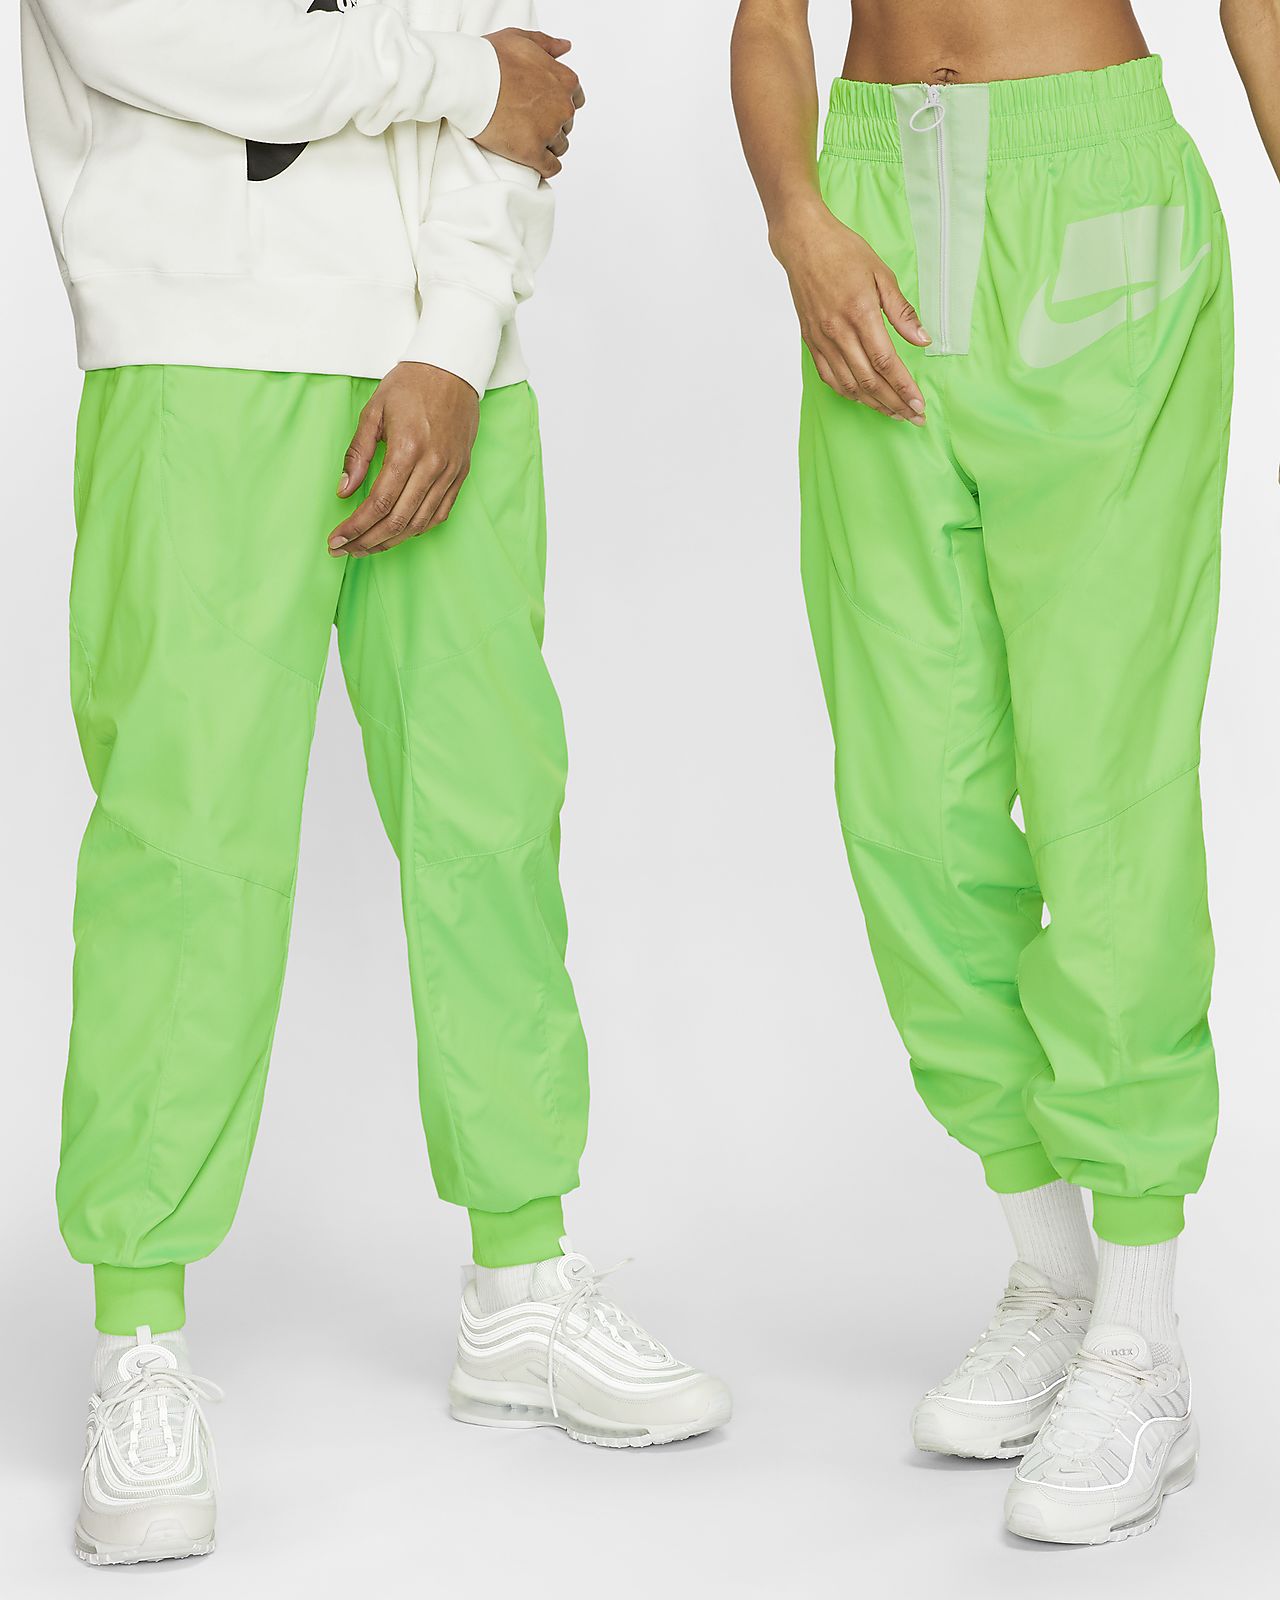 neon green nike pants cheap online